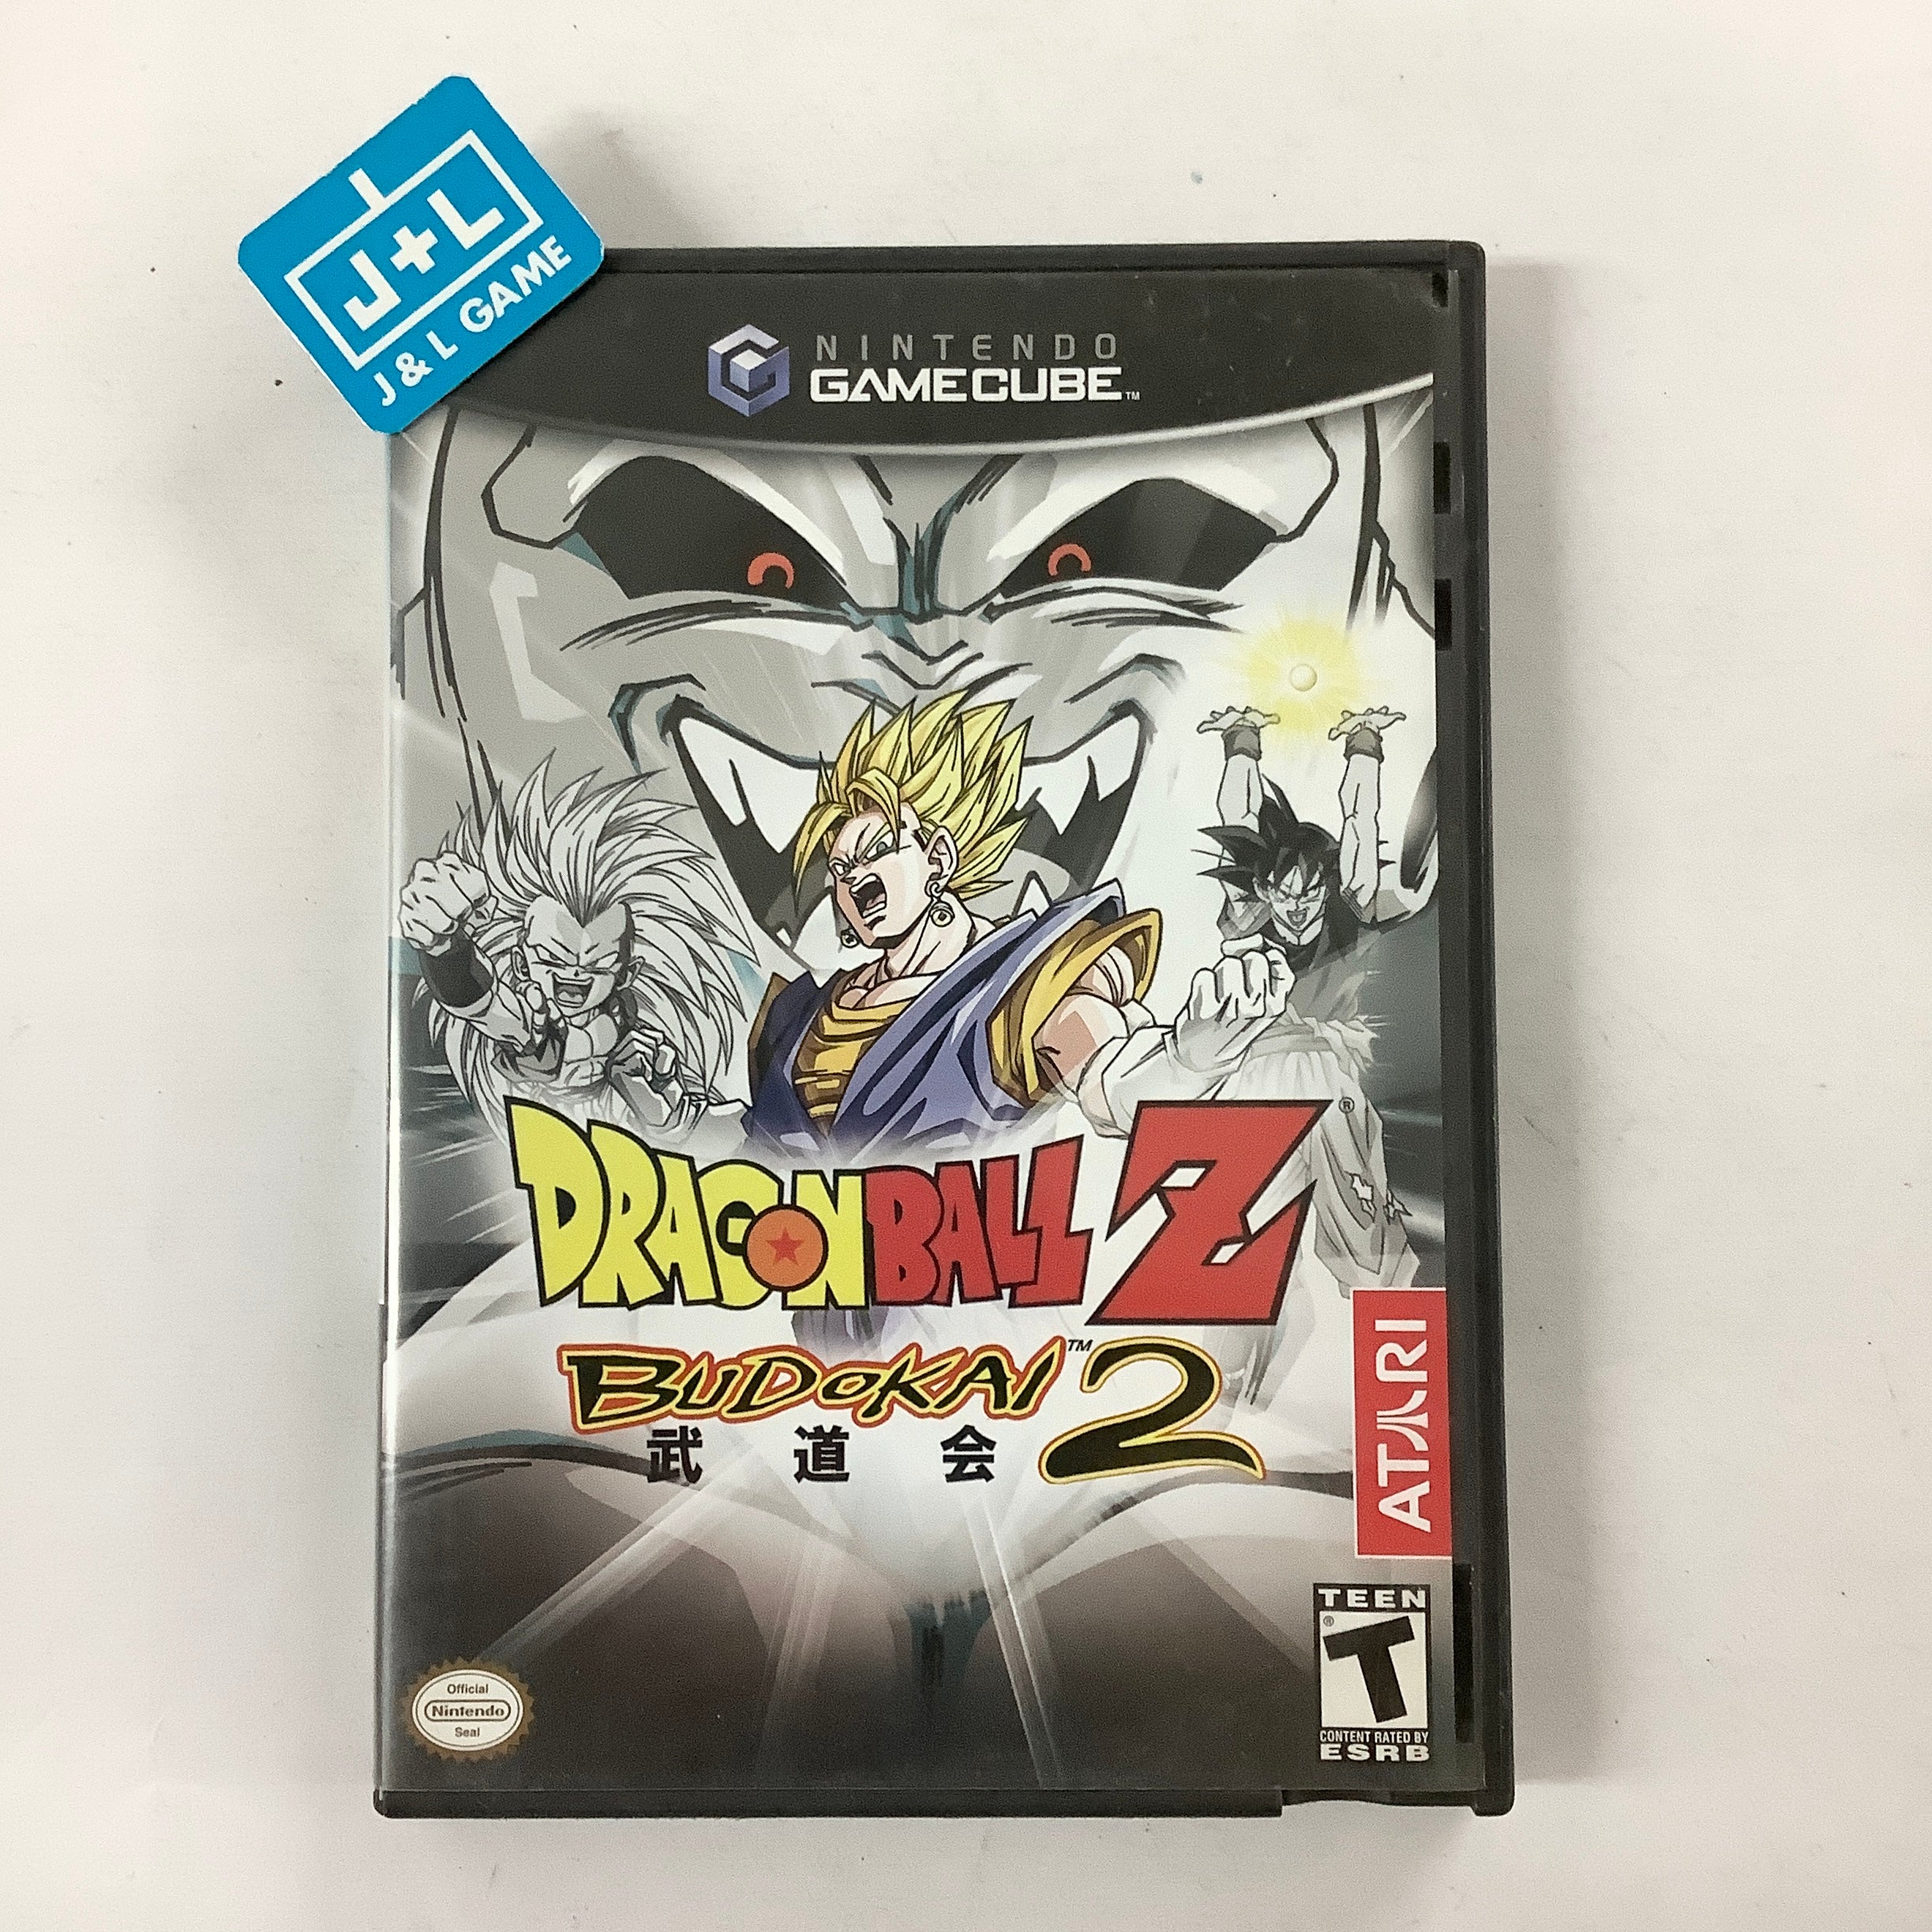 Dragon Ball Z: Budokai 2 - (GC) GameCube [Pre-Owned]